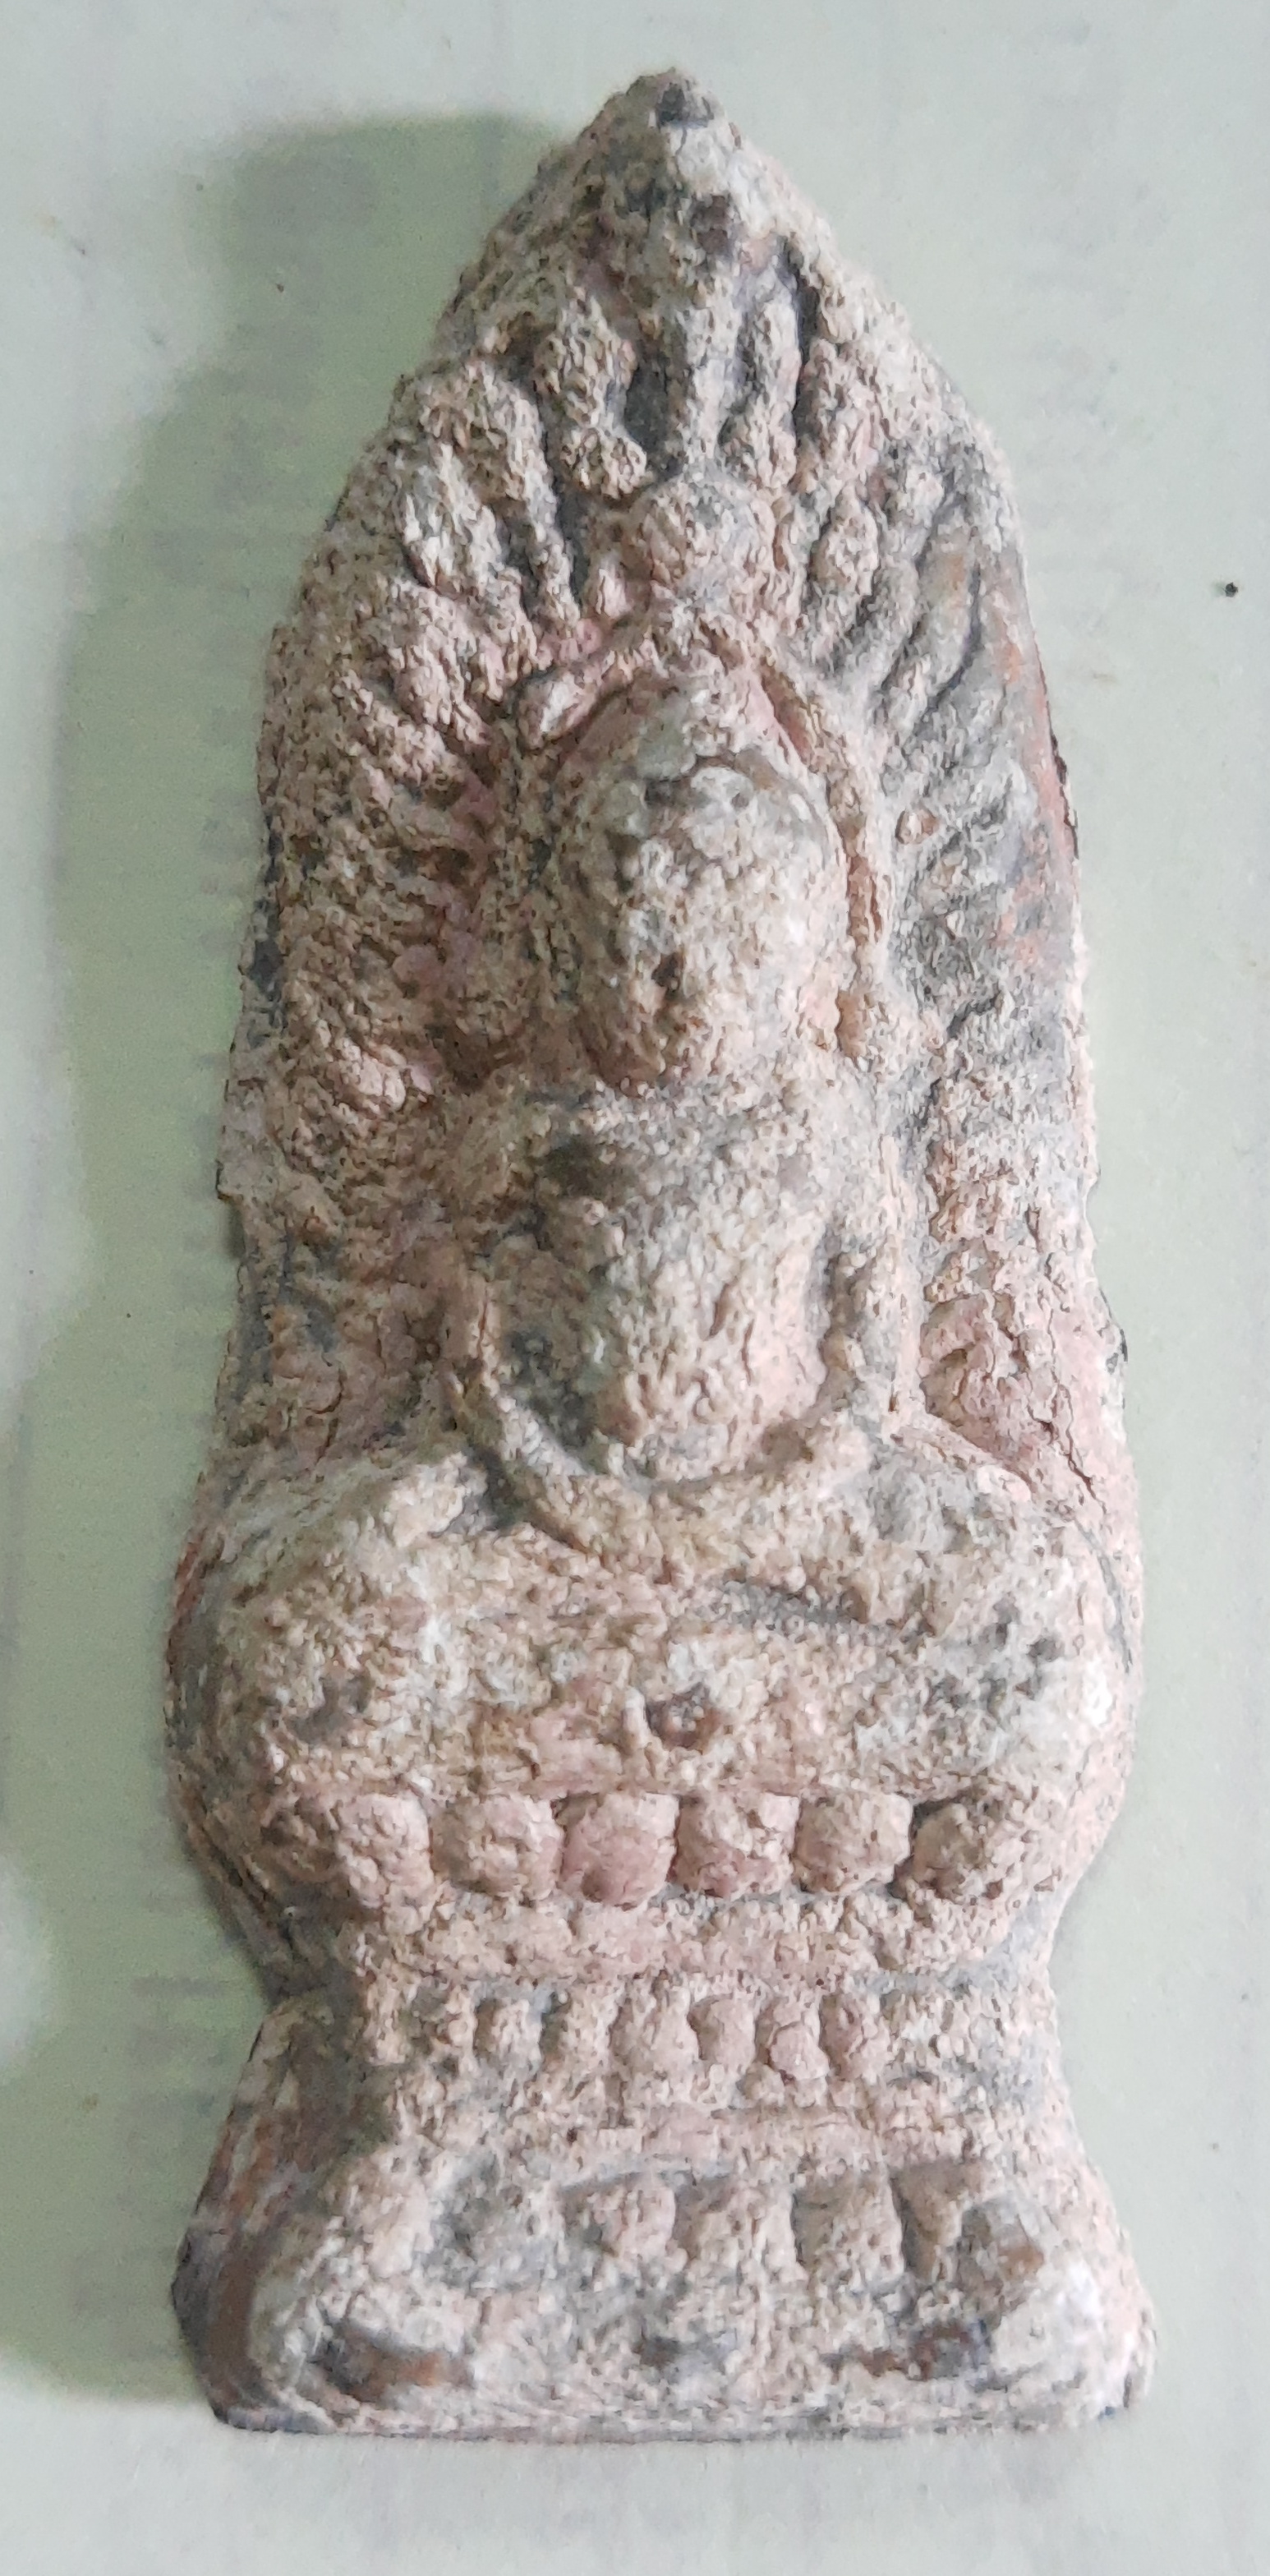 พระซุ้มนครโกษา ชินเงิน สนิมแดง อายุมากกว่า 700 ปี พิมพ์ฐานสูง กรุวัดพระศรีรัตนมหาธาตุ ลพบุรี